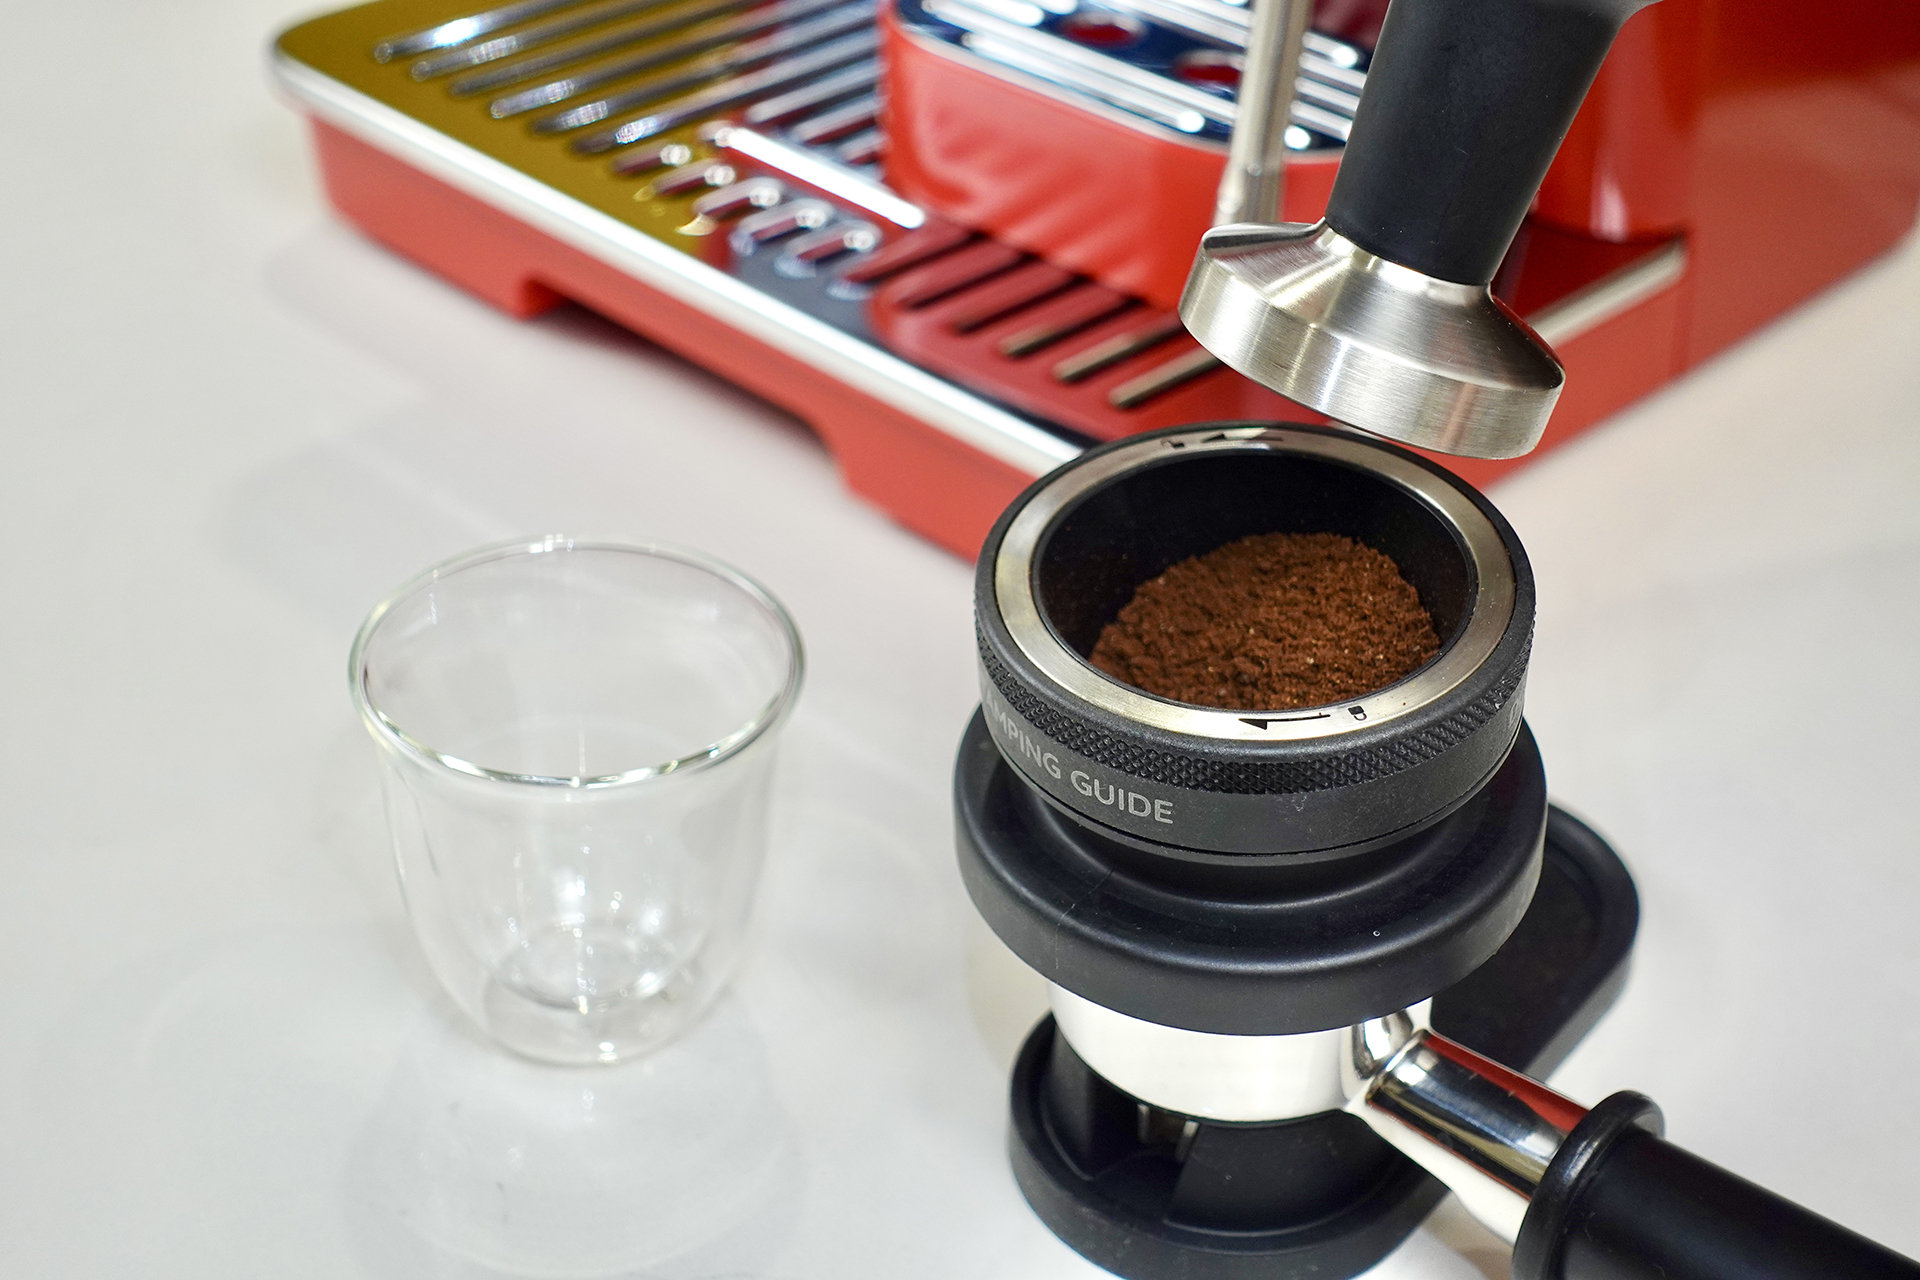 delonghi_pump_espresso_coffee_machine_la_specialista_arte_red_9155.r_tamp